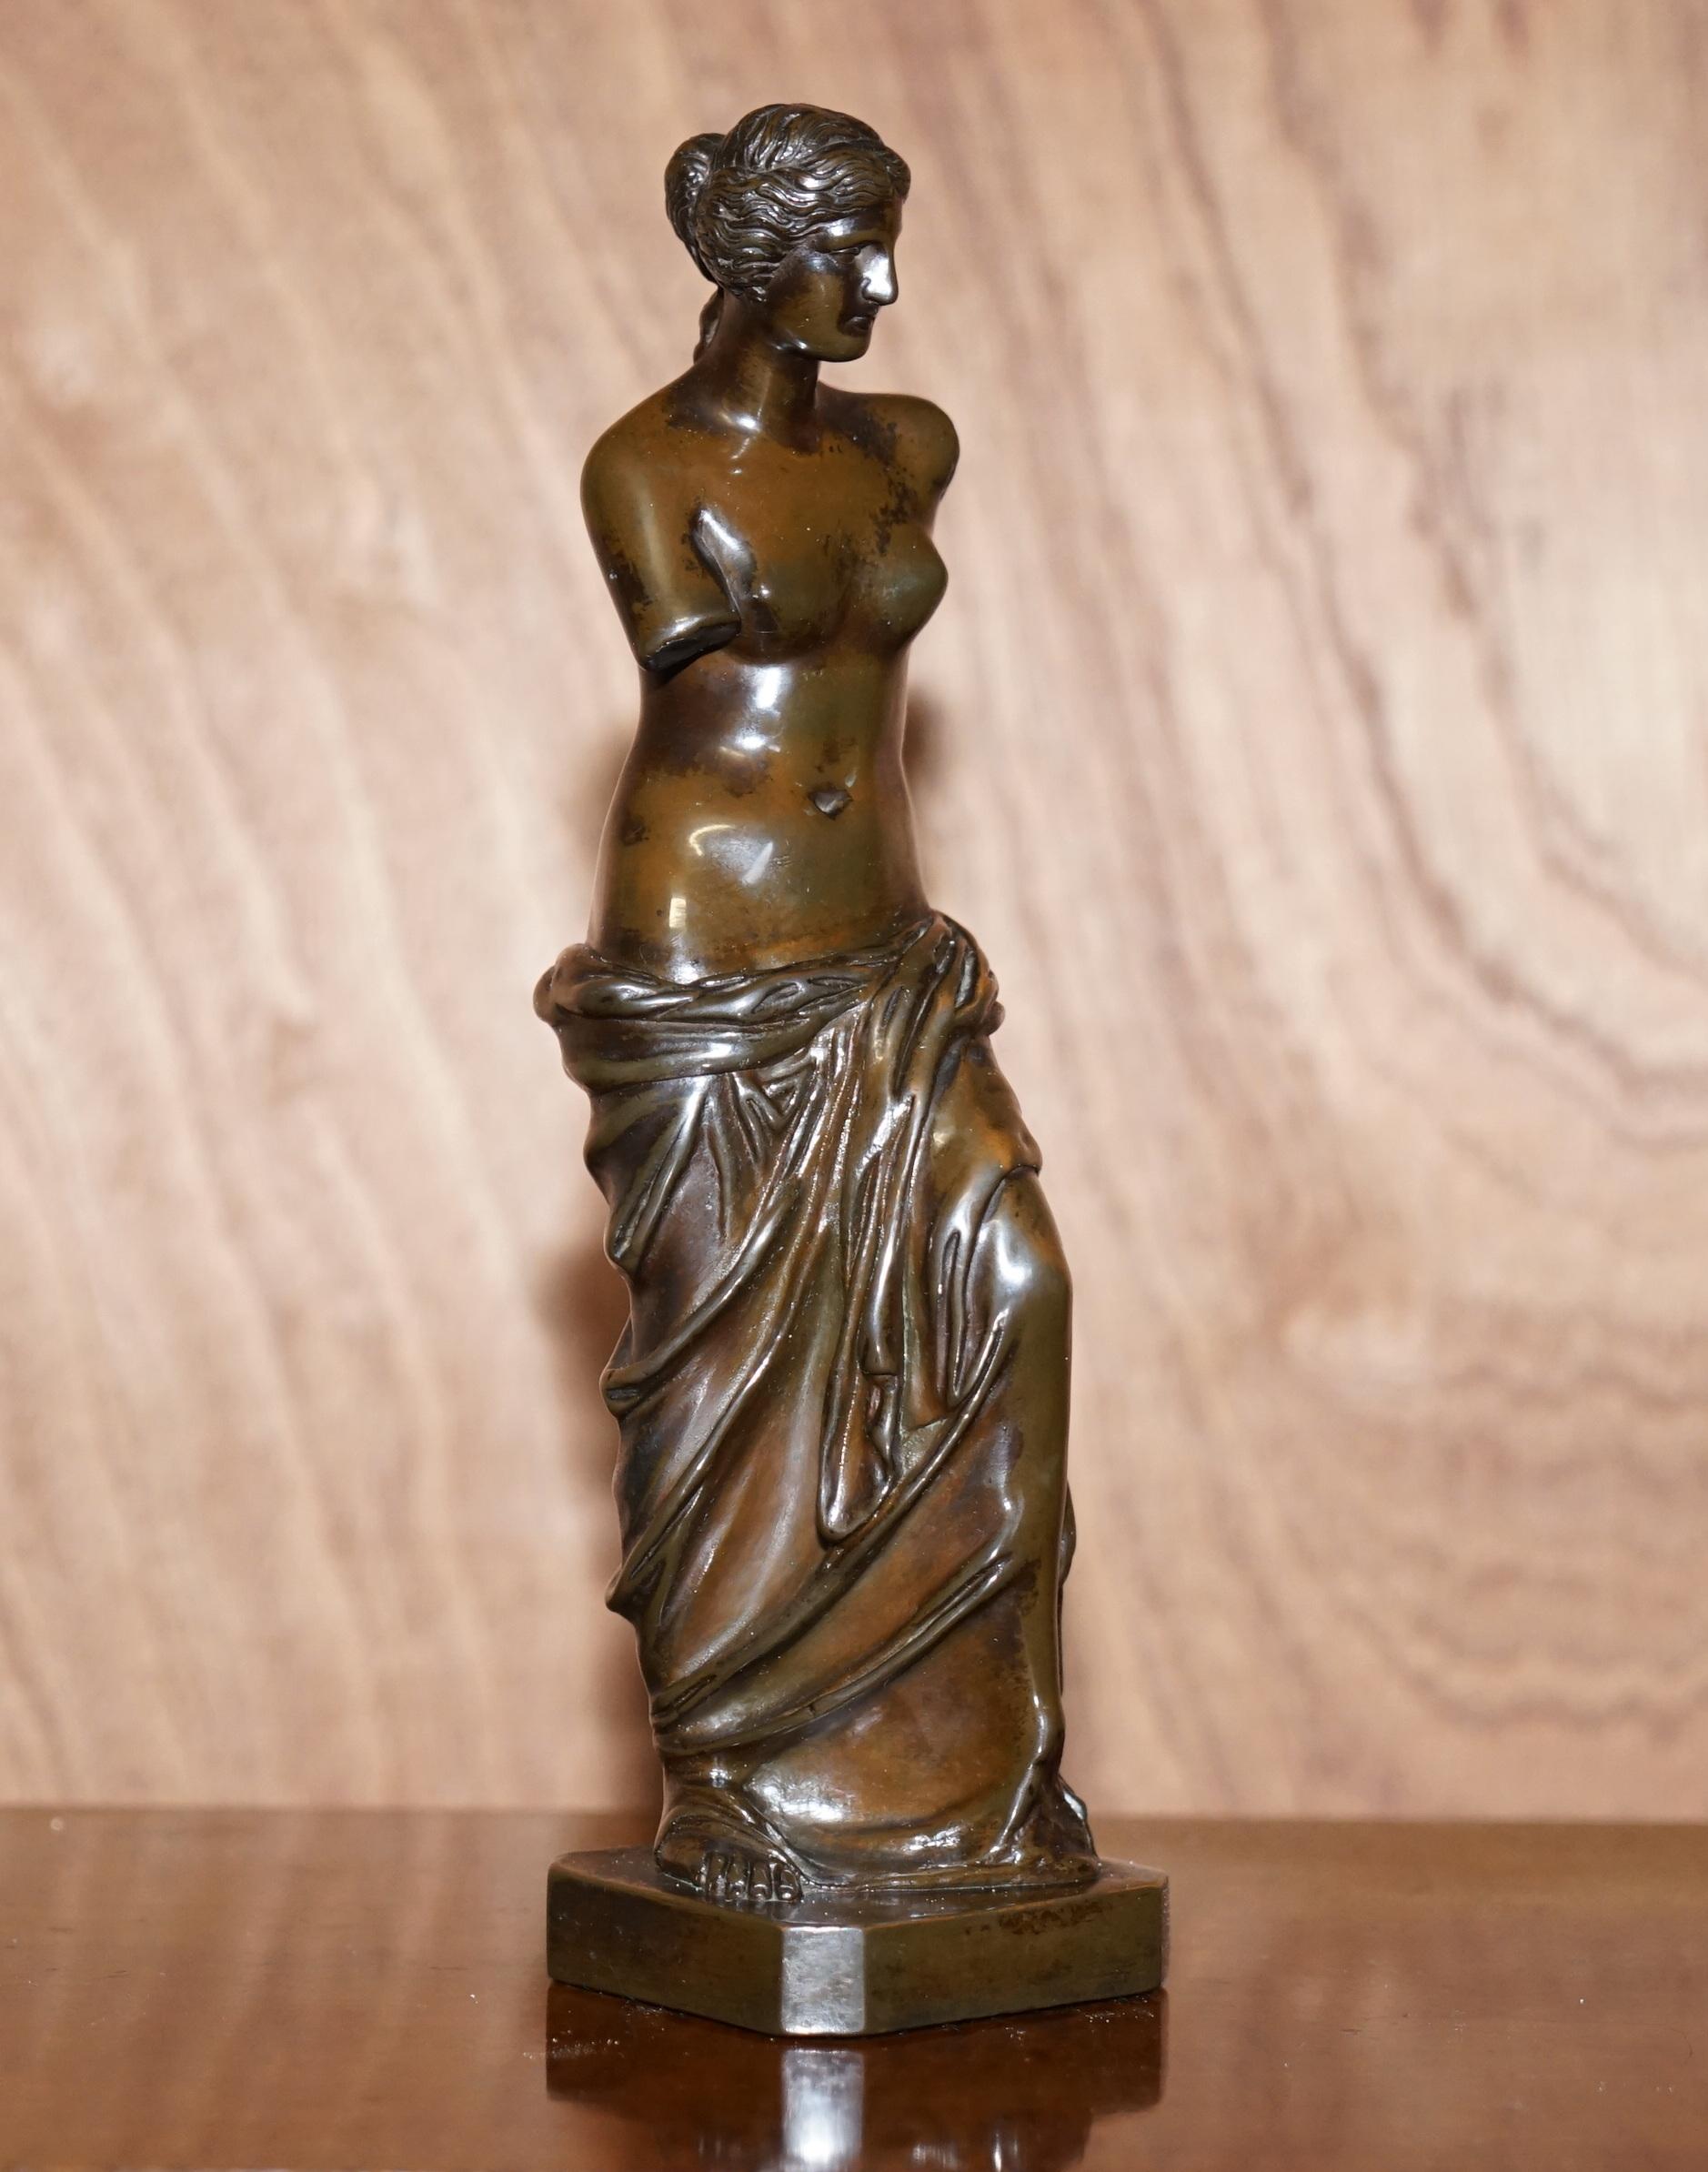 Nous sommes ravis d'offrir à la vente cette superbe statue de Vénus de Milo de grand tour italienne de la fin du 19ème siècle 

Une pièce décorative de très bonne qualité qui a l'air chère et importante dans n'importe quel contexte

Ces pièces